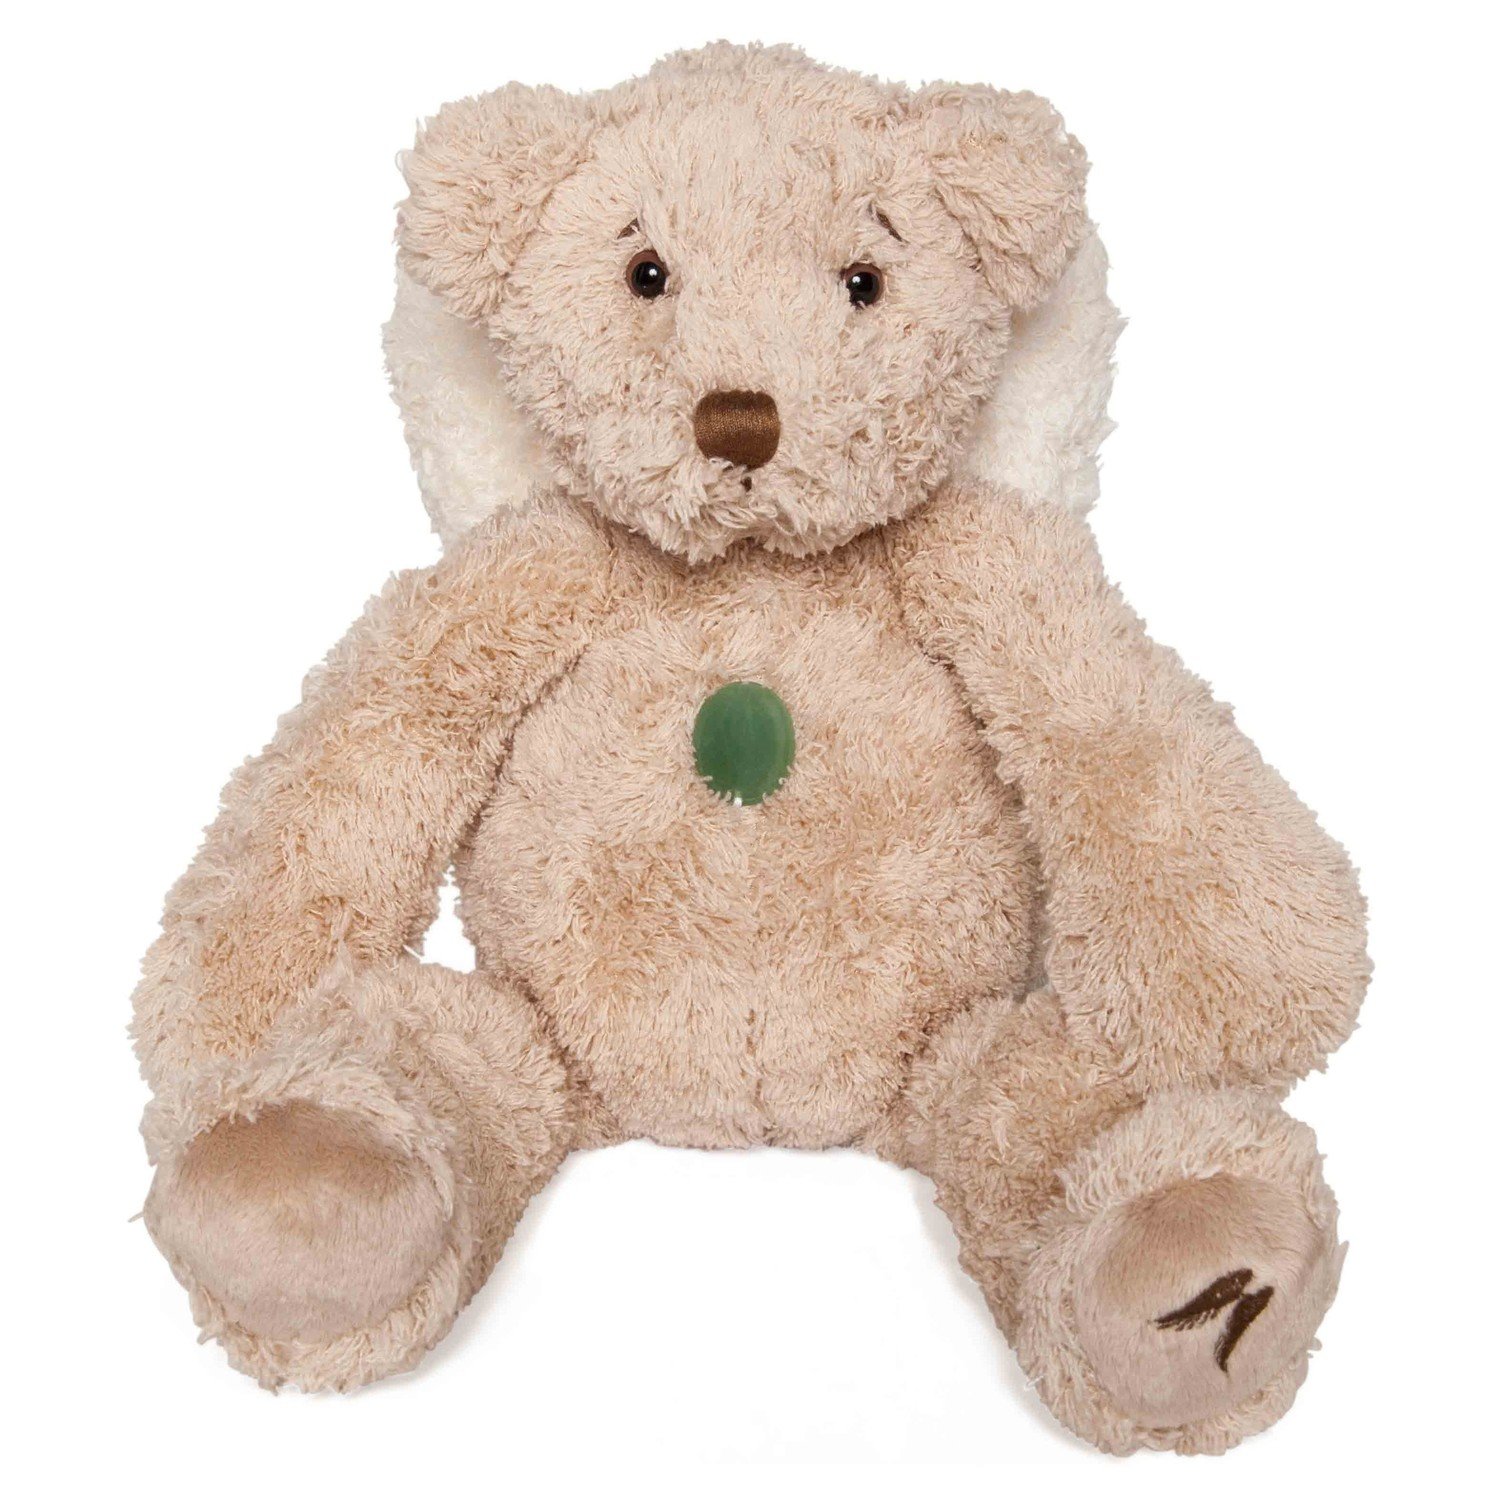 "UNBOXED" Teddy Bear - Hope, Angel of Healing